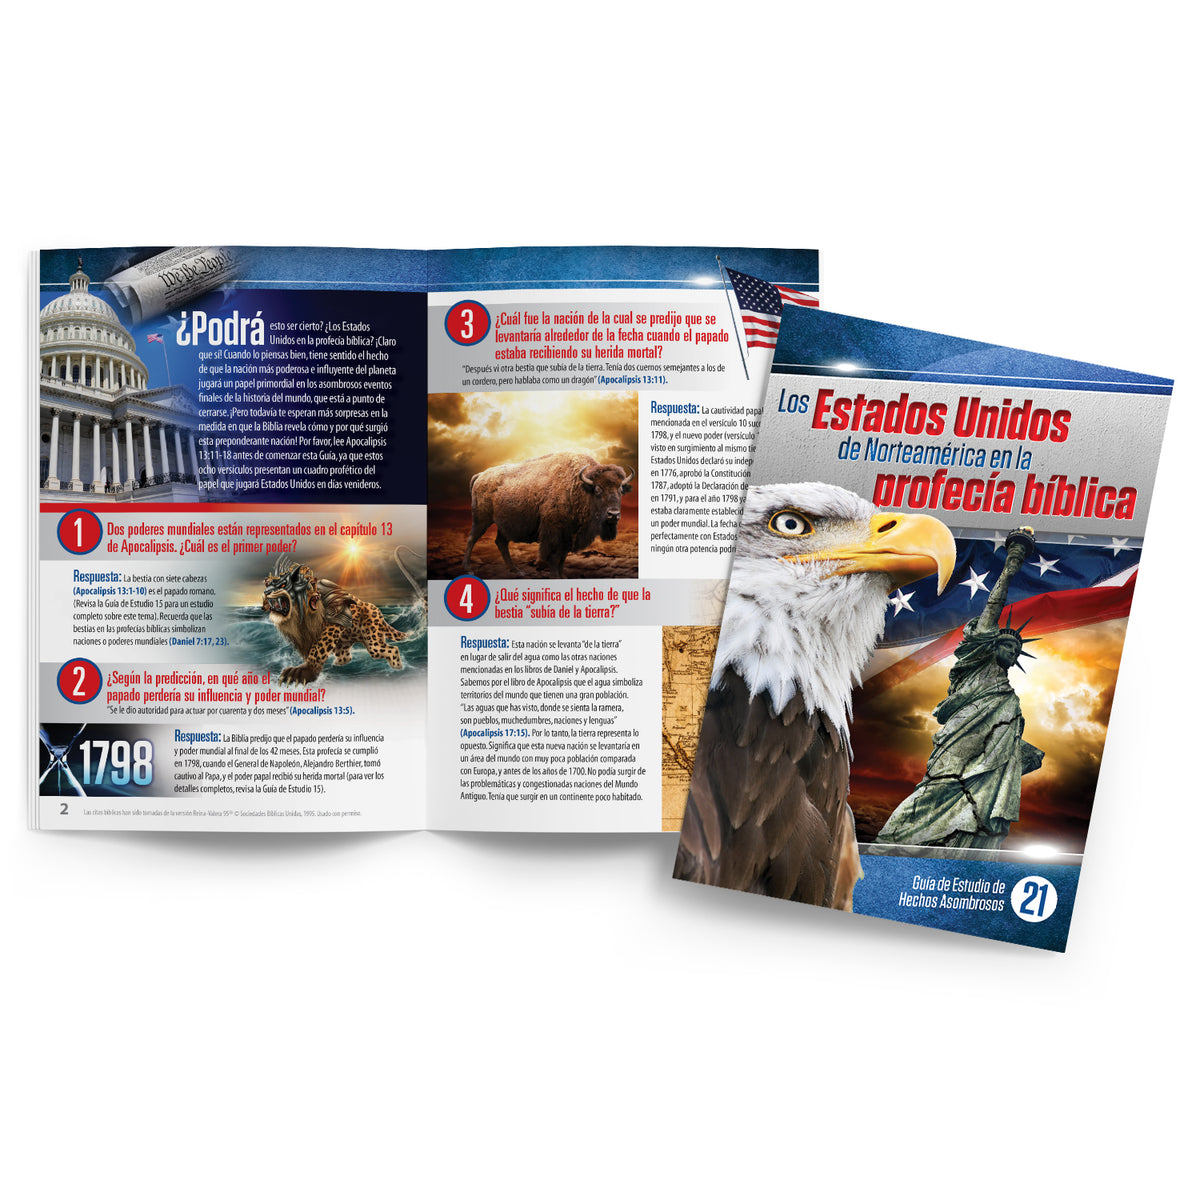 Los Estados Unidos En La Profecia Biblic by Bill May